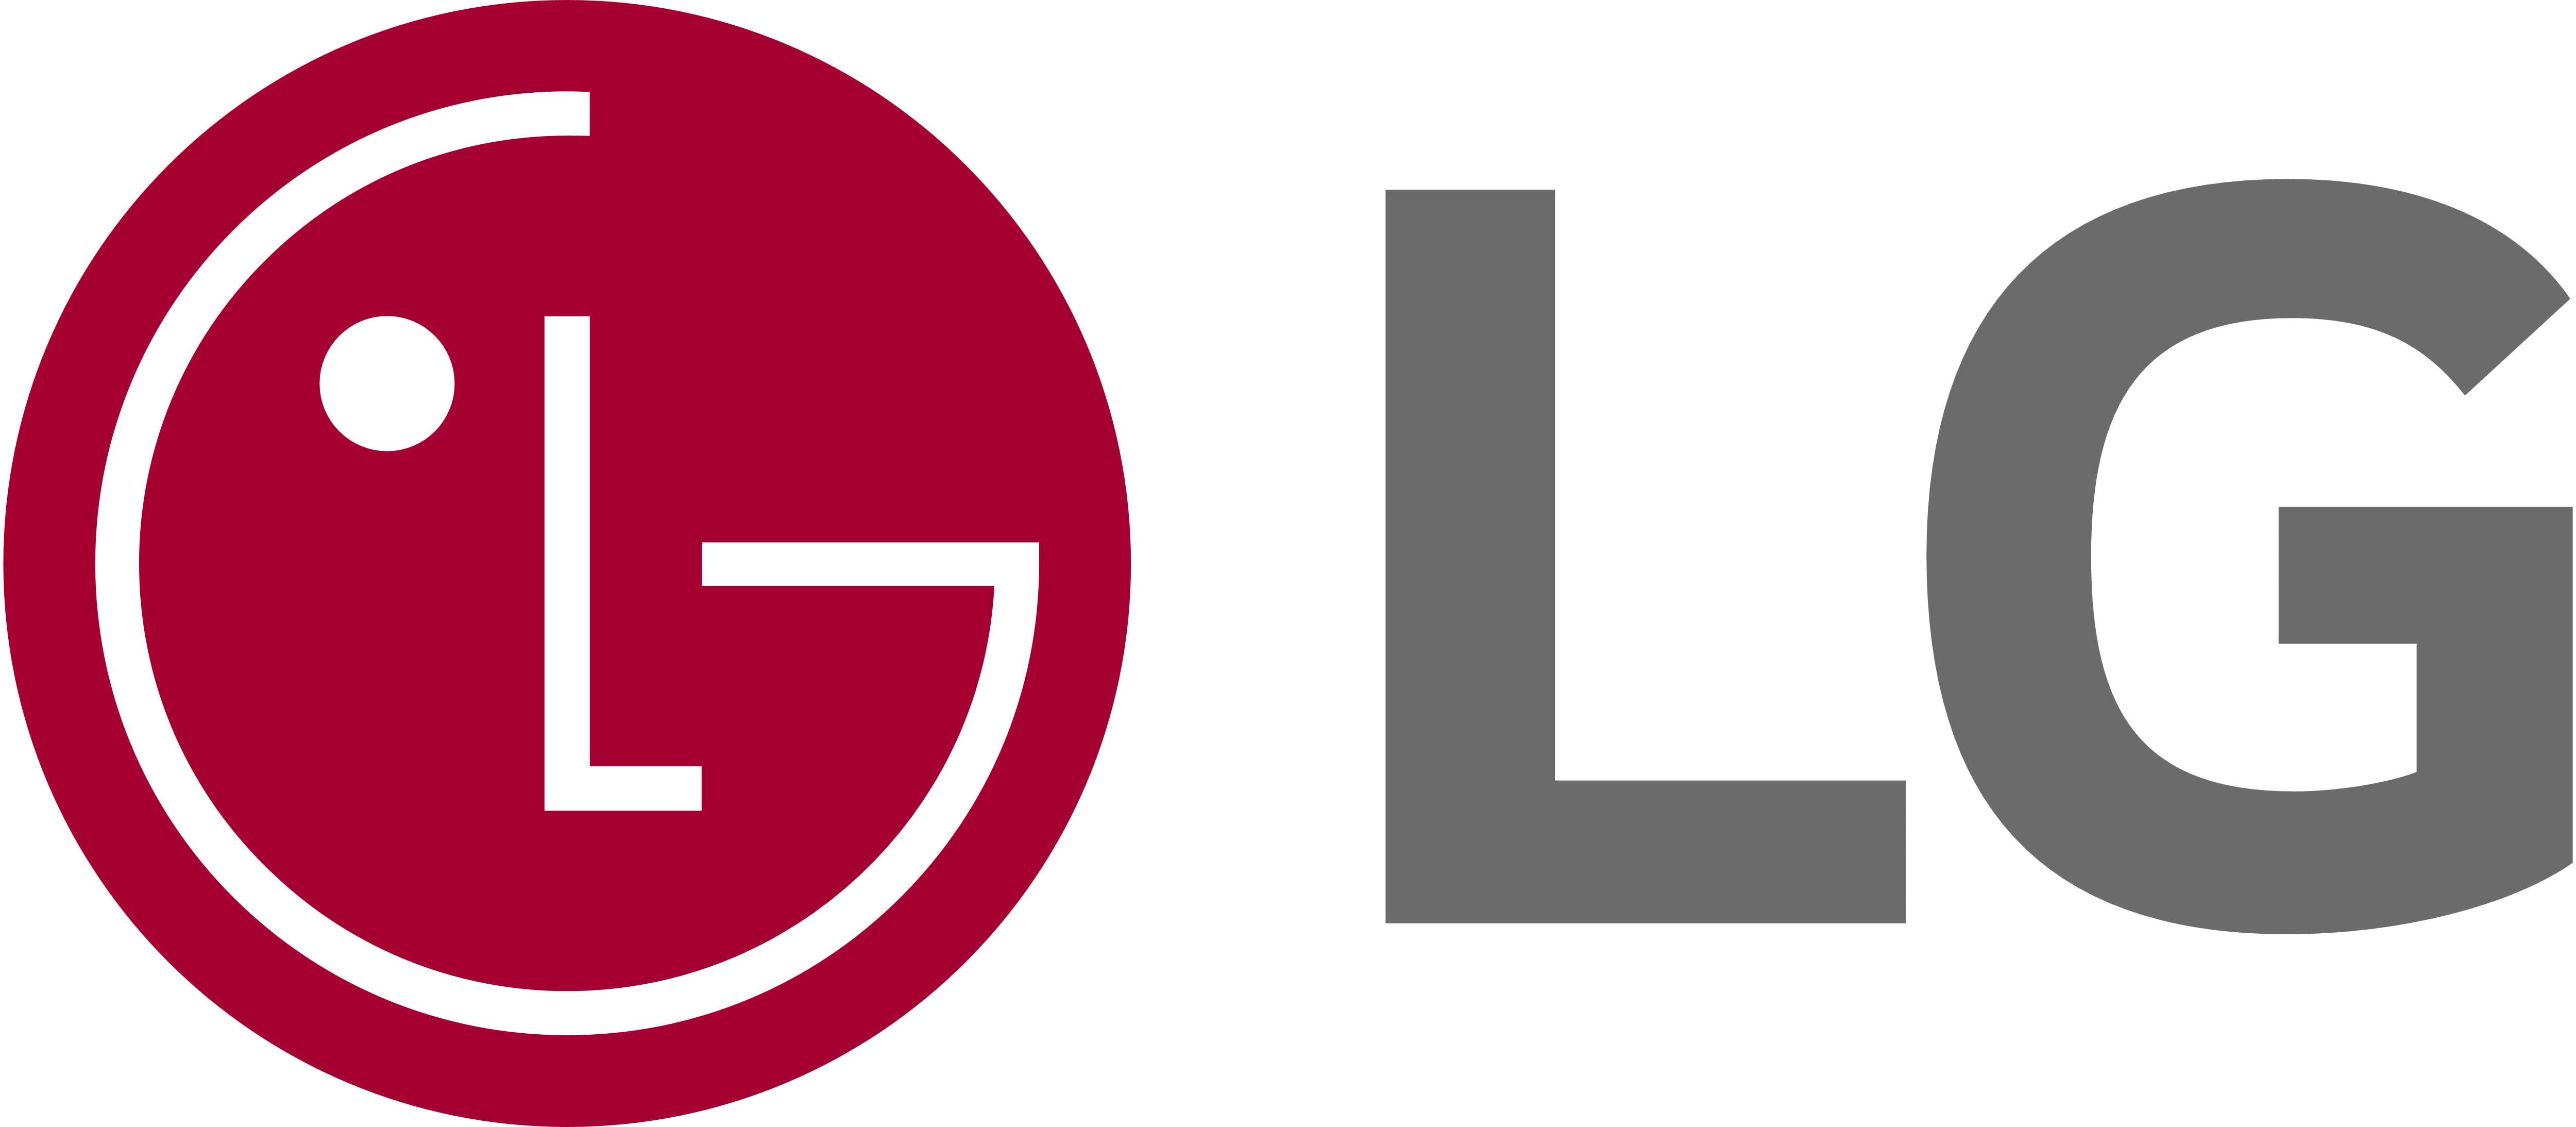 LG Fridge Repair Company, LG Fridge Repair Company